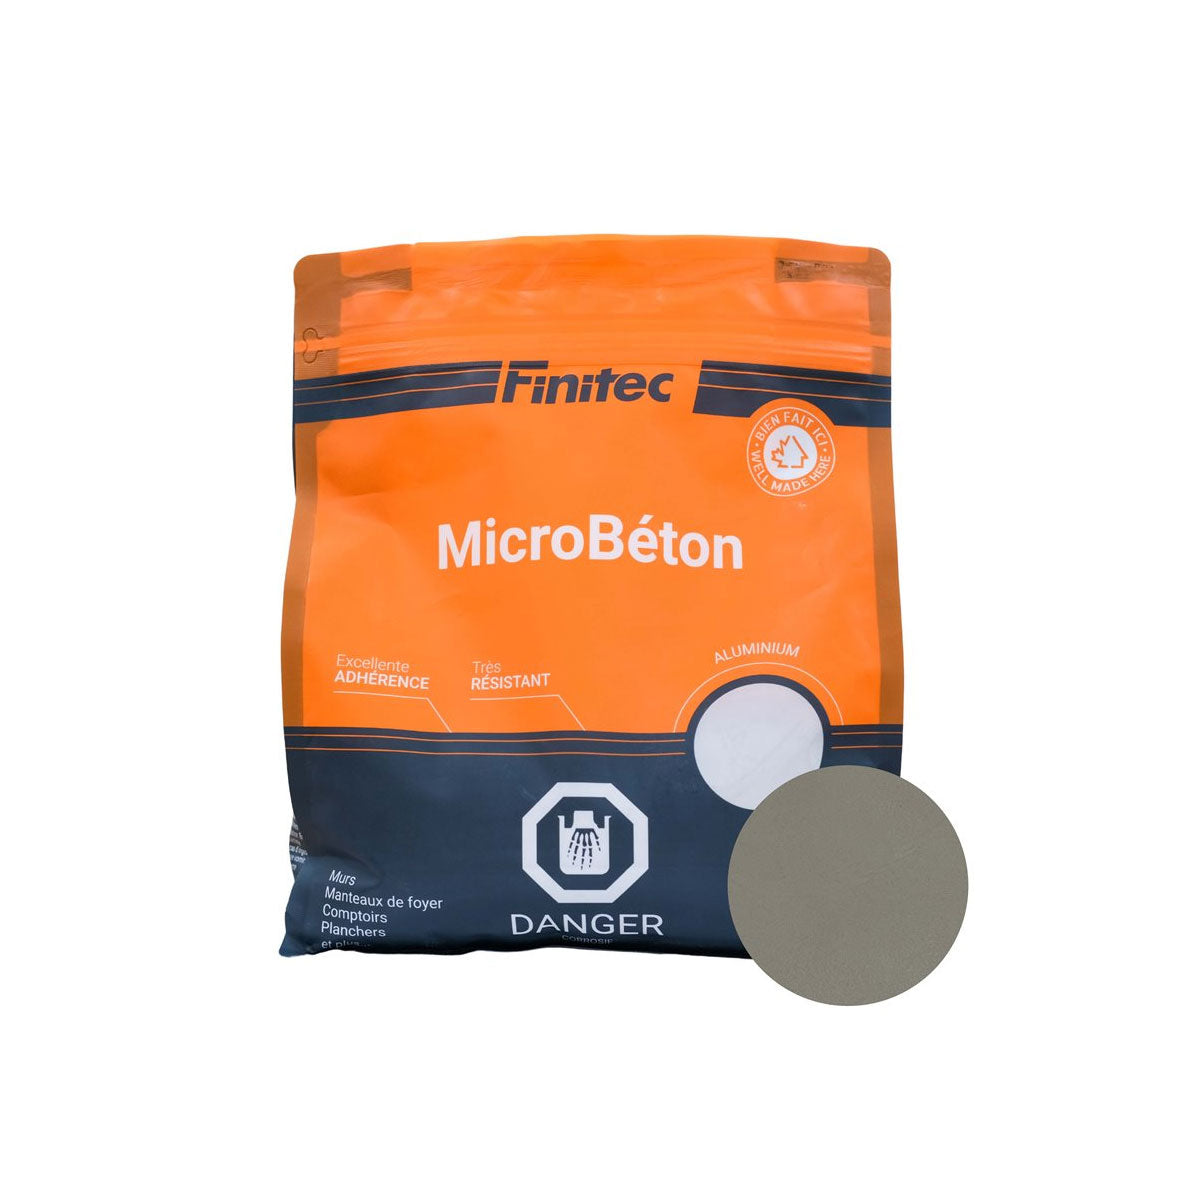 MicroBéton Finitec couleurs variées 3,5 kg et 18kg